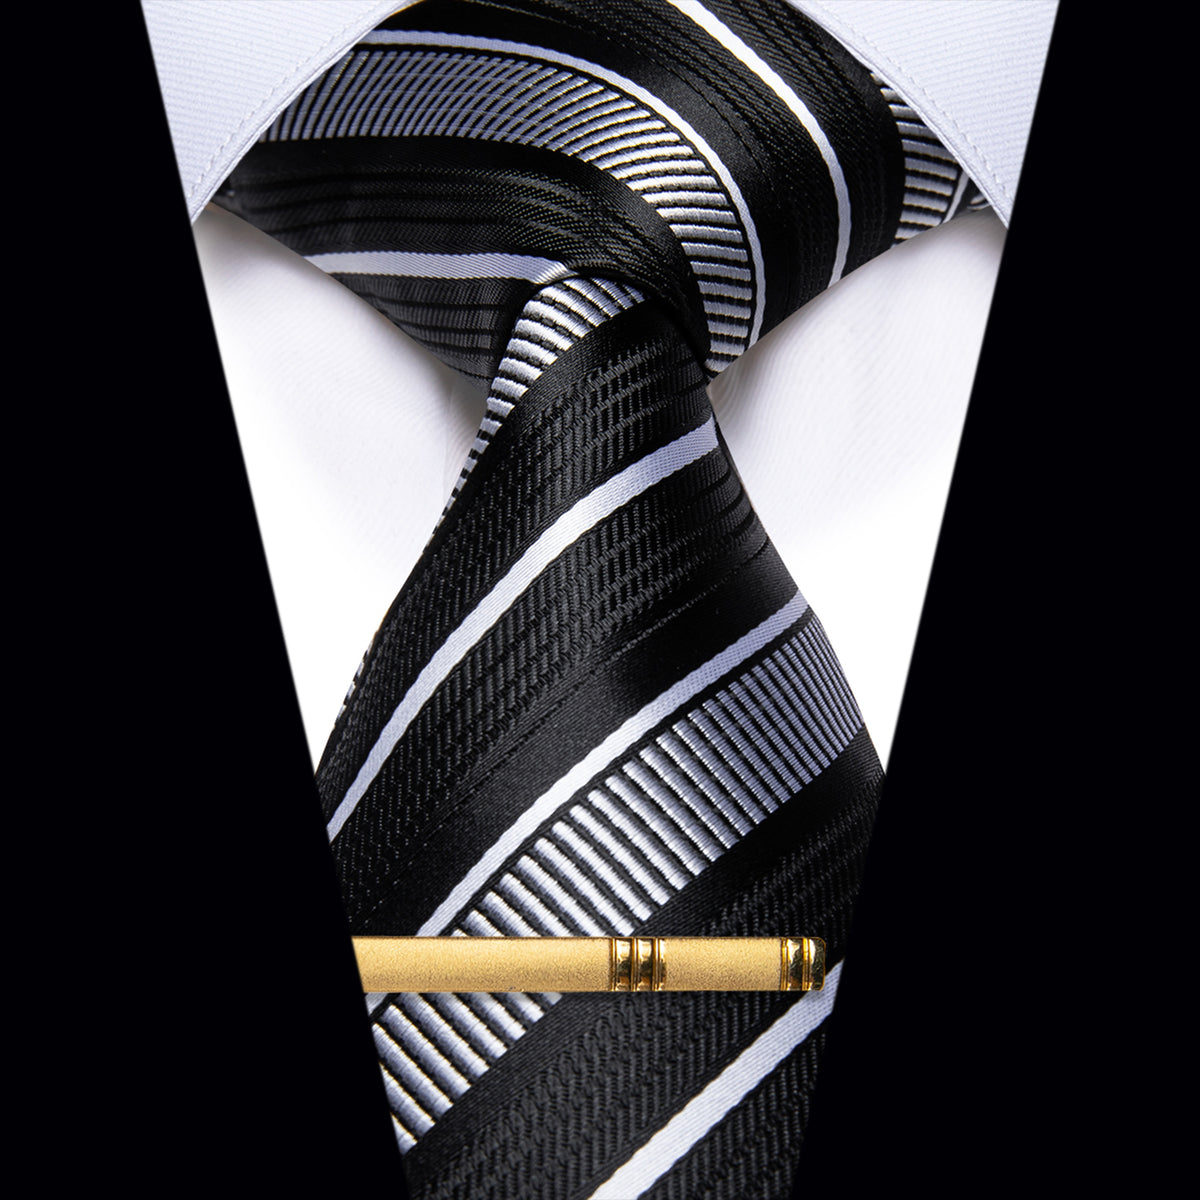 Black Grey White Striped Silk Necktie with Golden Tie Clip